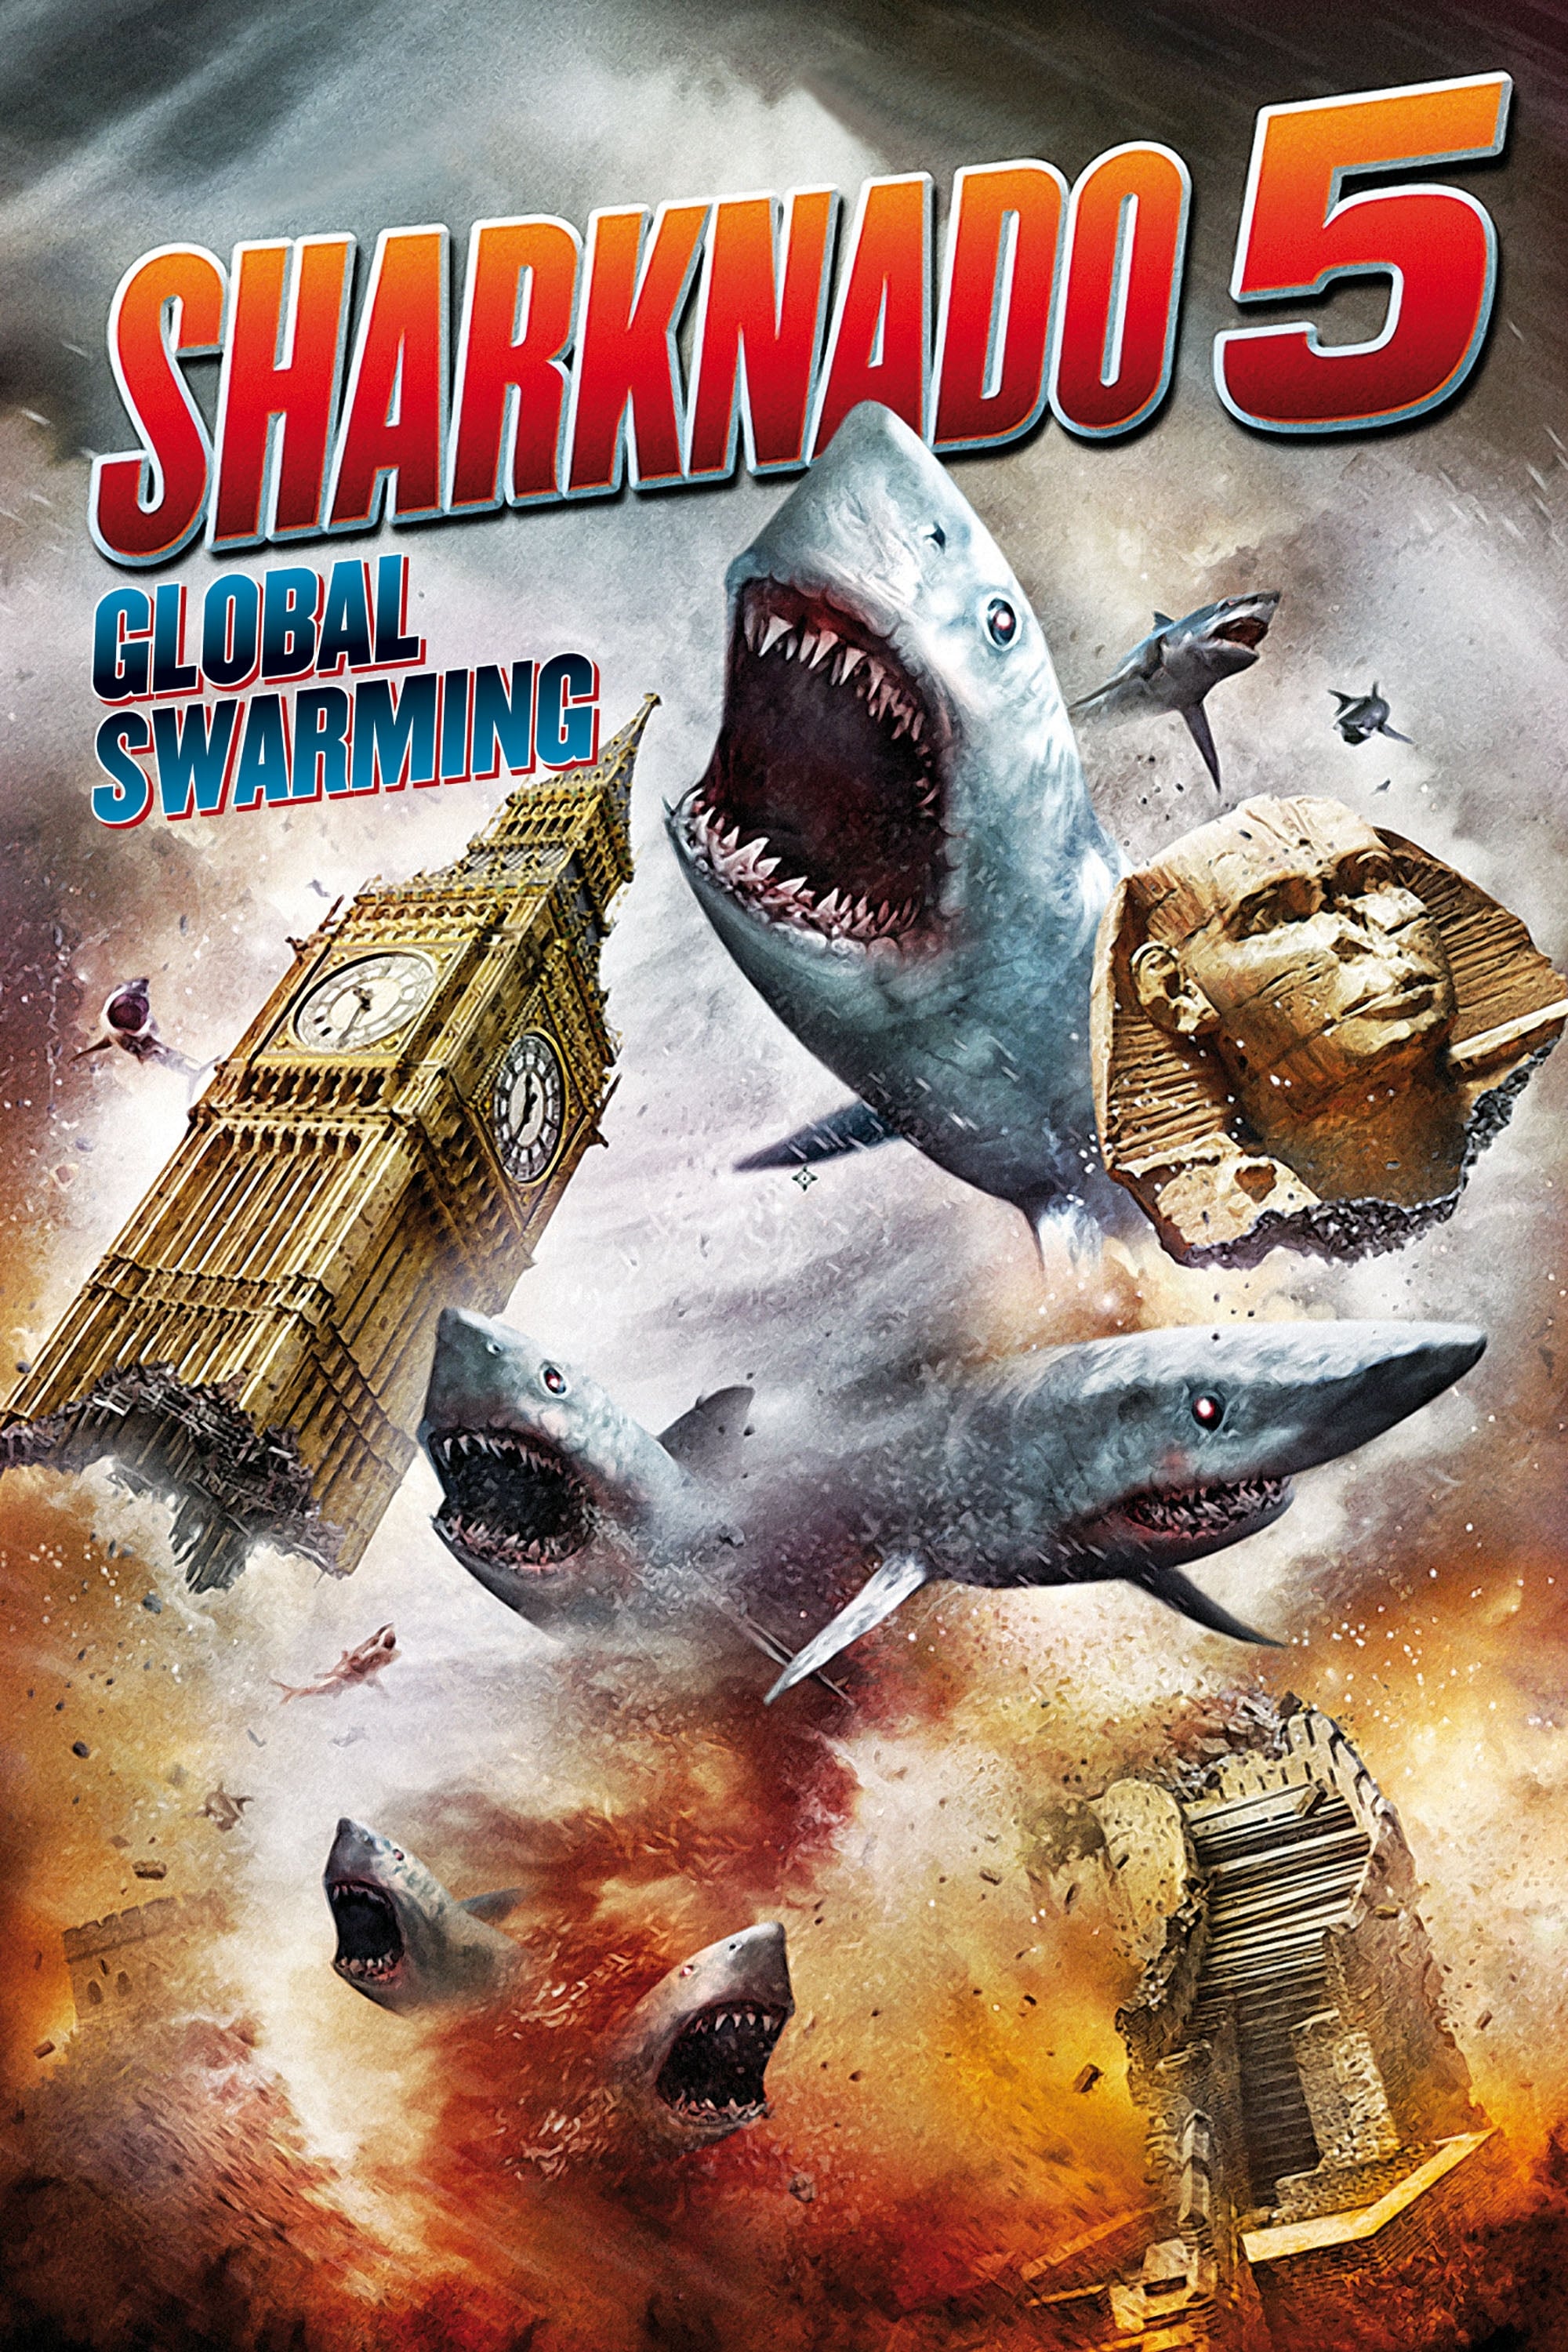 Sharknado 5 : Fourmillement planétaire